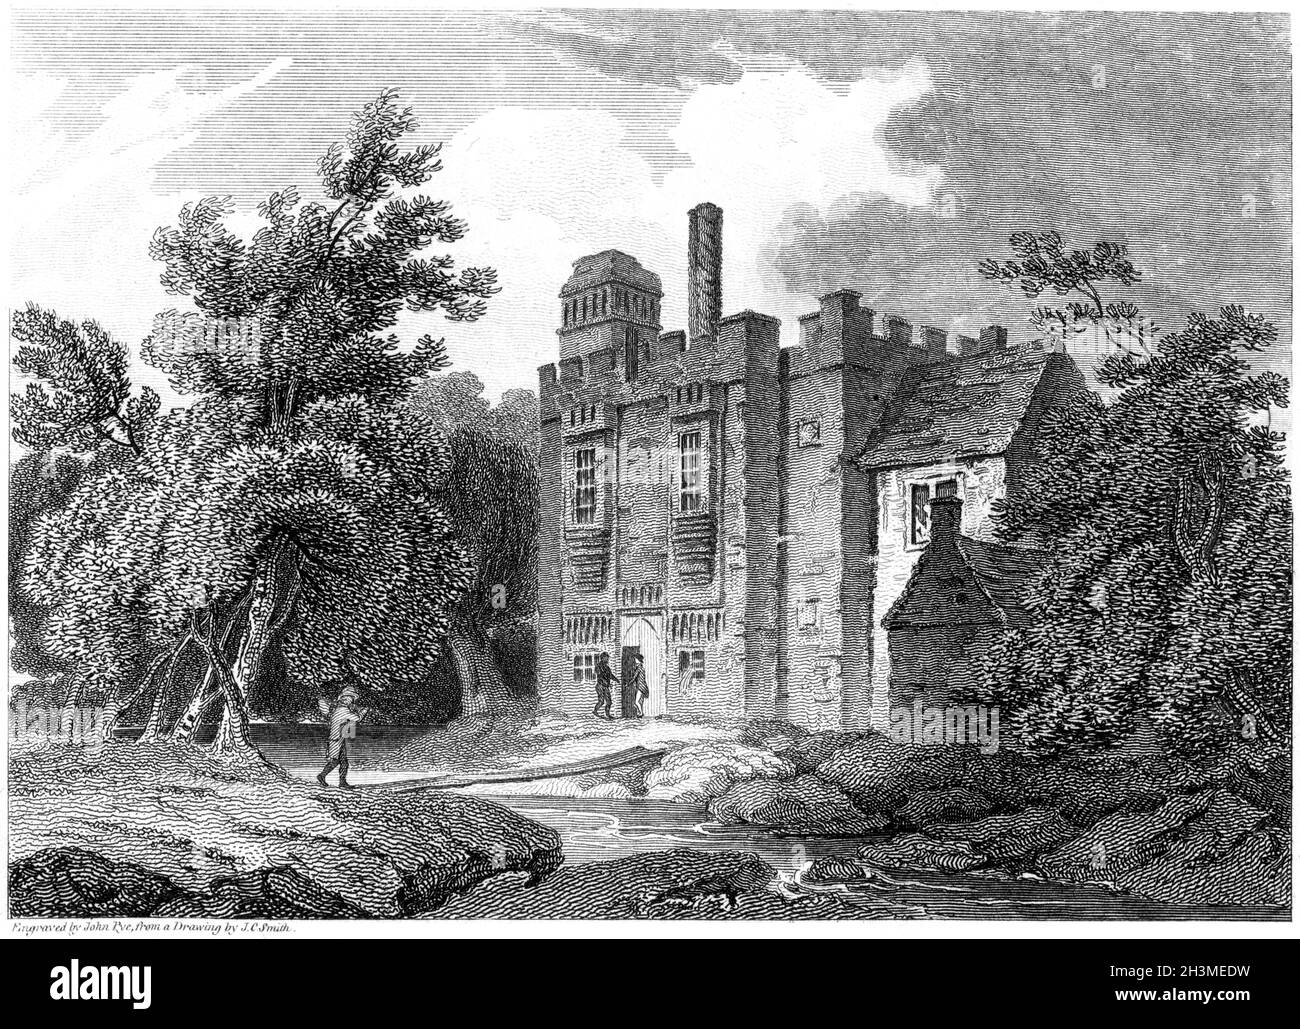 Eine Gravur des Rye House, Hertfordshire UK, gescannt in hoher Auflösung von einem Buch aus dem Jahr 1812. Für urheberrechtlich frei gehalten. Stockfoto